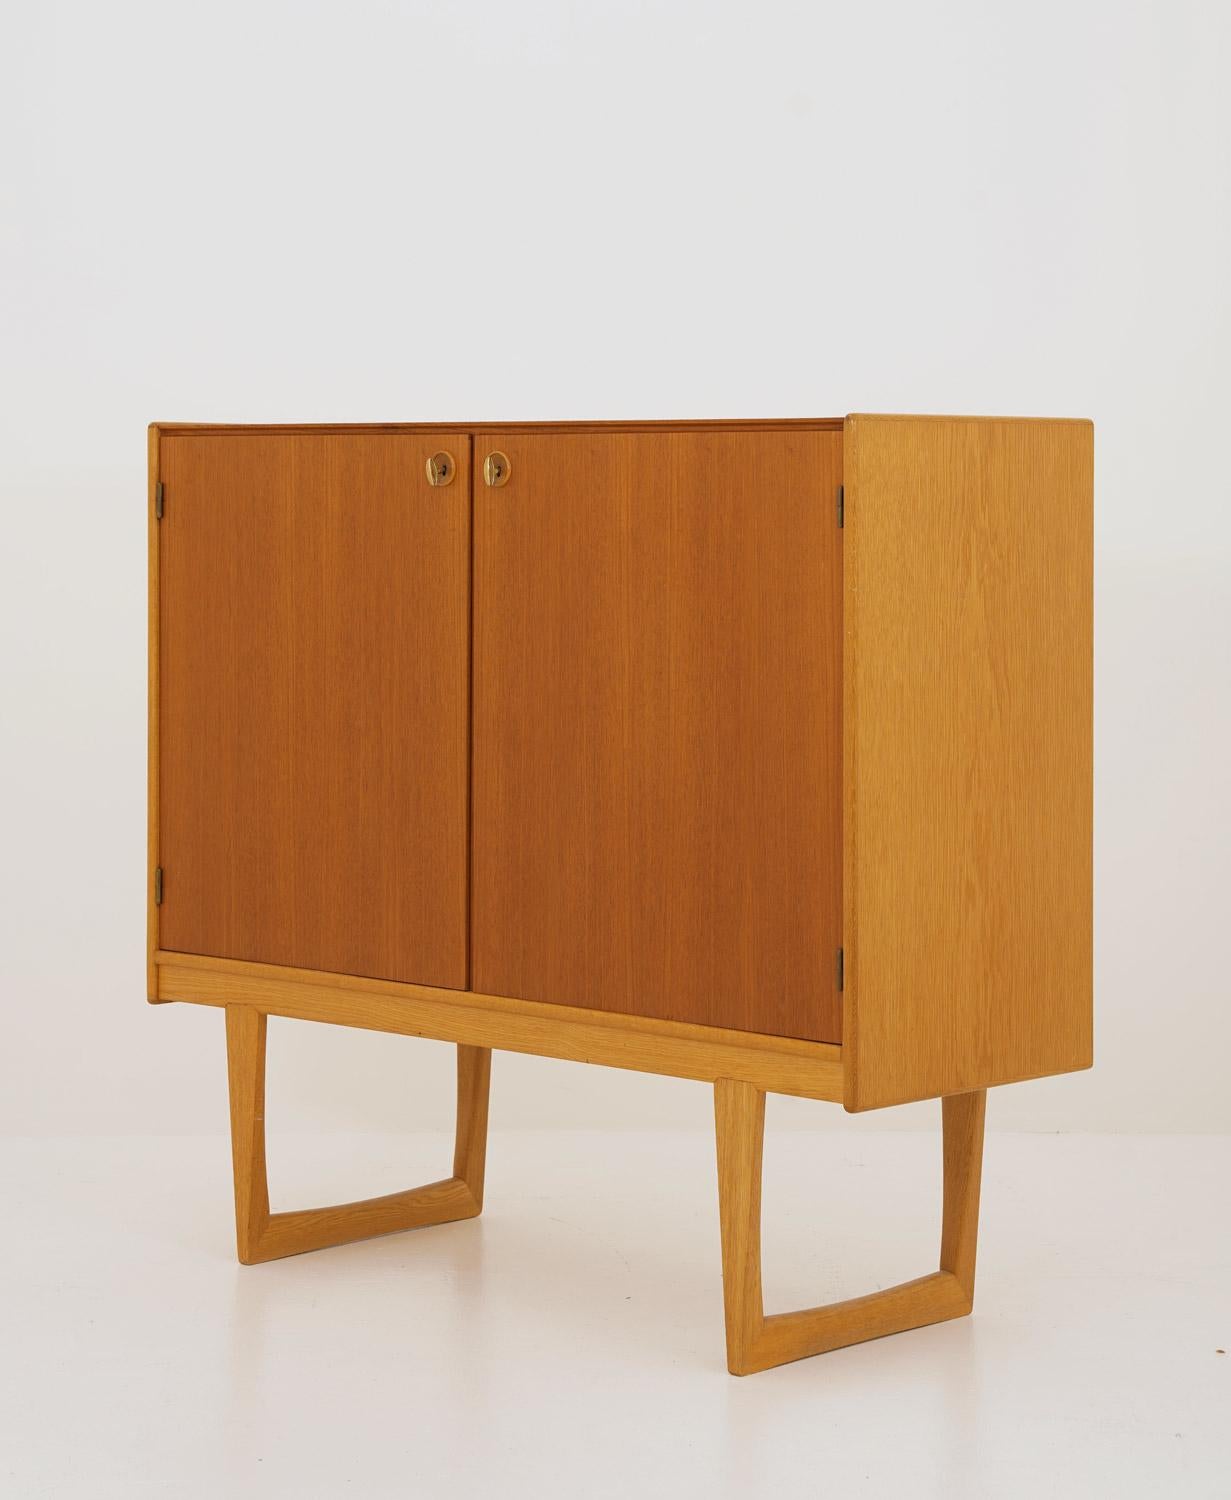 Armoire élégante et minimaliste réalisée par Yngvar Sandström pour Nordiska Kompaniet (NK). L'armoire comporte deux portes en teck avec des clés en laiton d'origine. Les pieds et les côtés sont en chêne, ce qui crée un beau contraste entre les